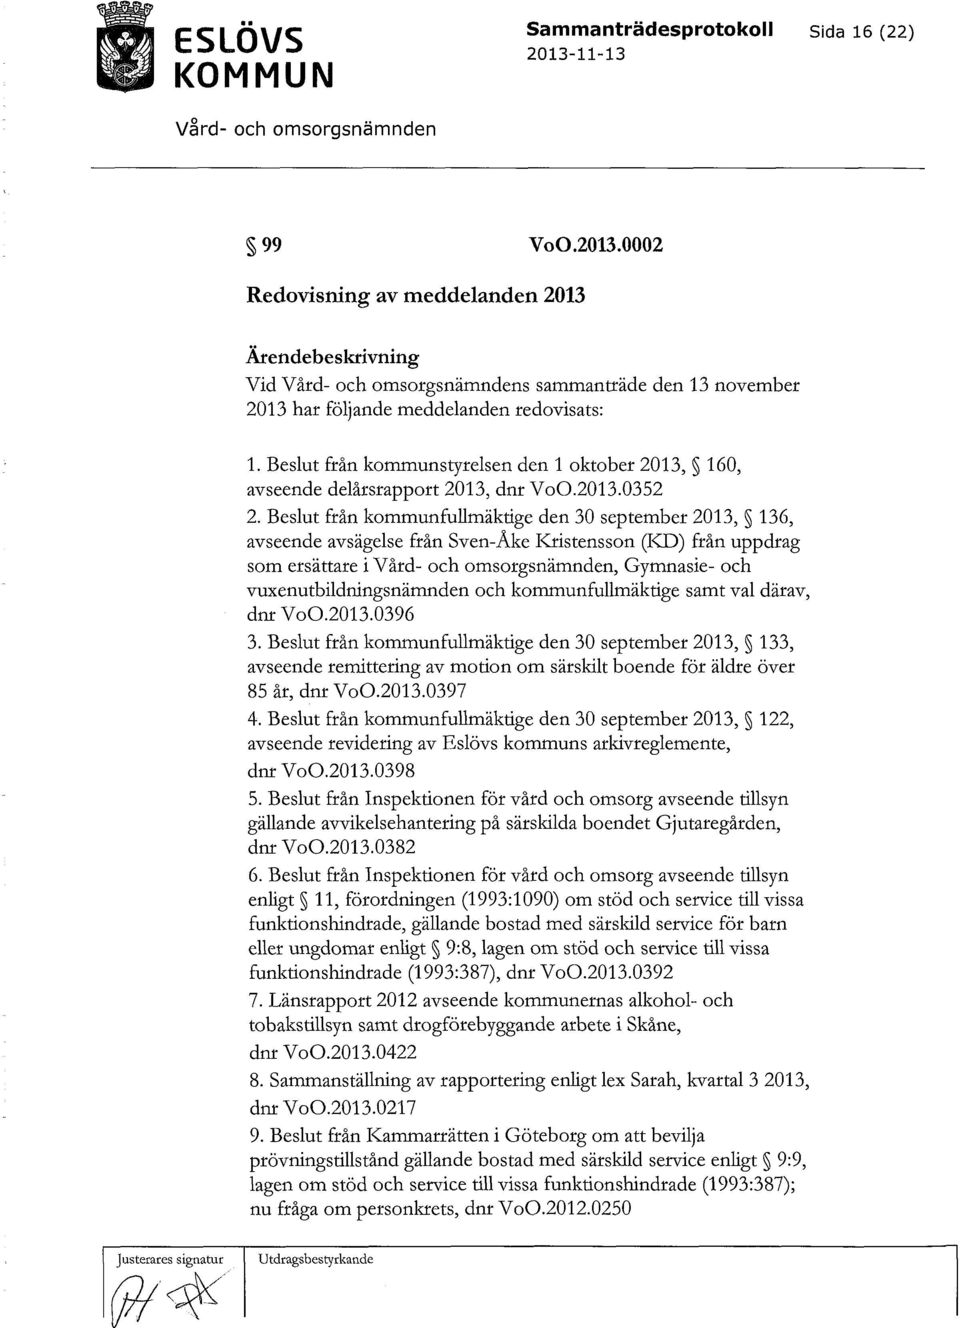 Beslut från kommunfullmäktige den 30 september 2013, 136, avseende avsägelse från Sven-Åke Kristensson (KD) från uppdrag som ersättare i, Gymnasie- och vuxenutbildningsnämnden och kommunfullmäktige